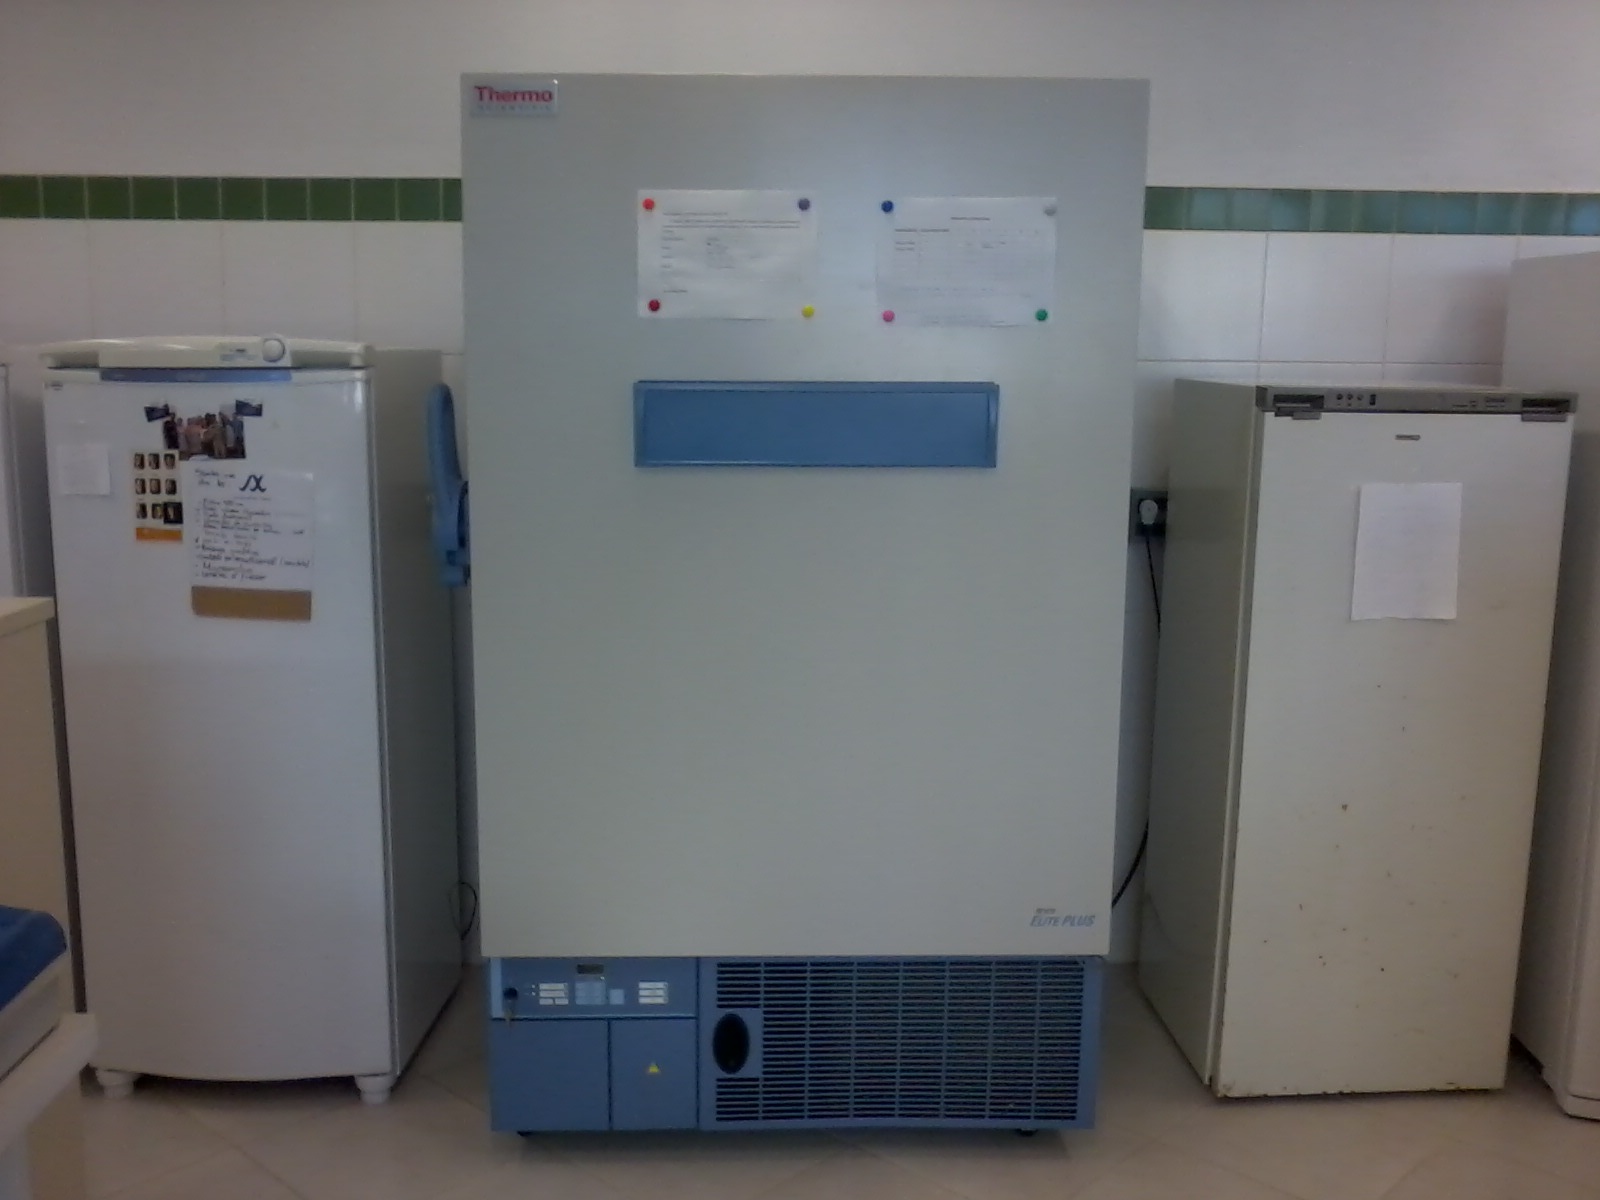 Freezer - 80C (Convenio n. 01.09.0374.00)